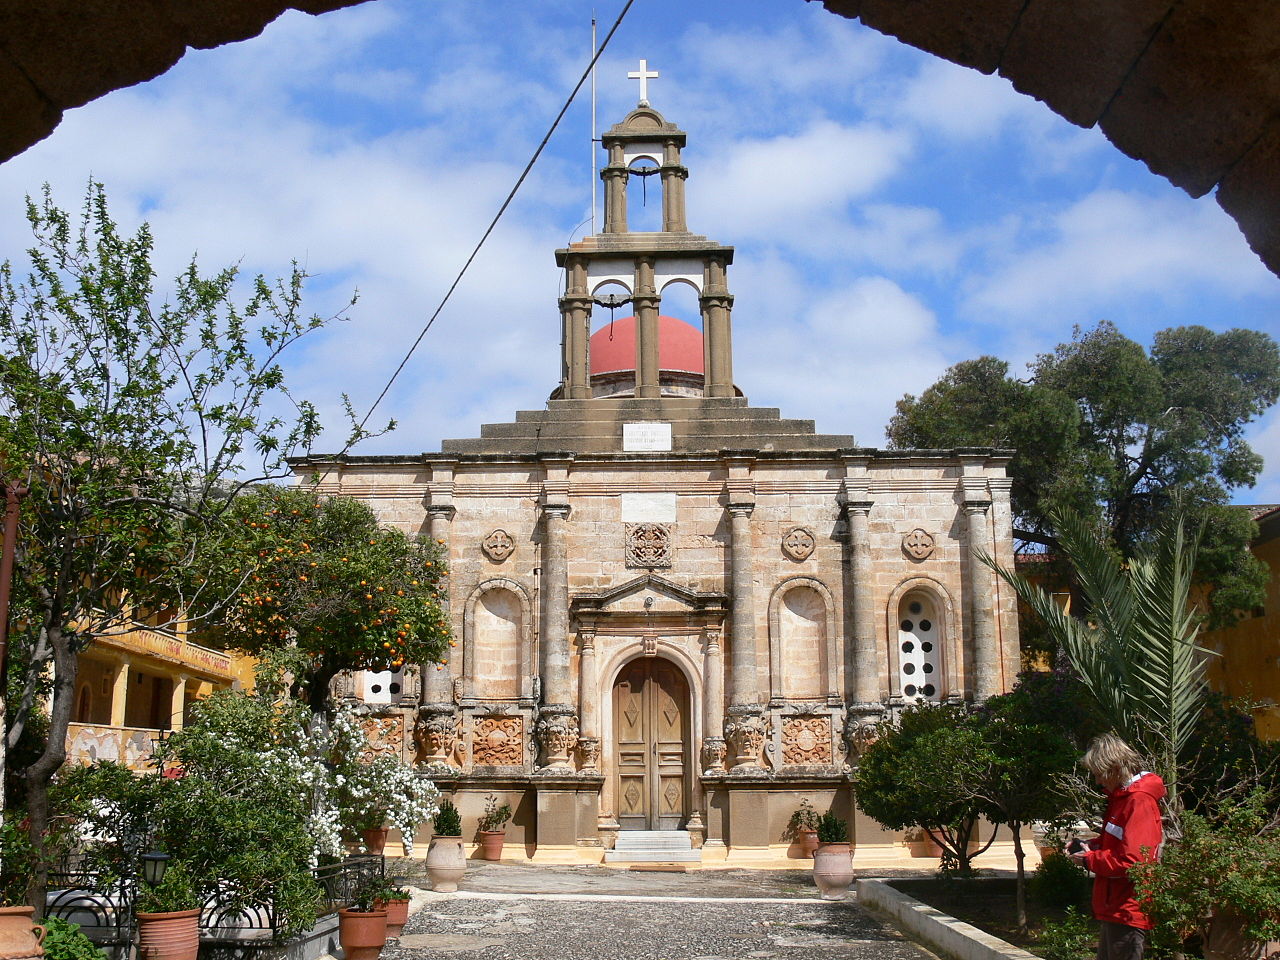 https://en.wikipedia.org/wiki/Gouverneto_Monastery#/media/File:Moni_Gouvernetou_-_Kloster_-_Kirche.jpg